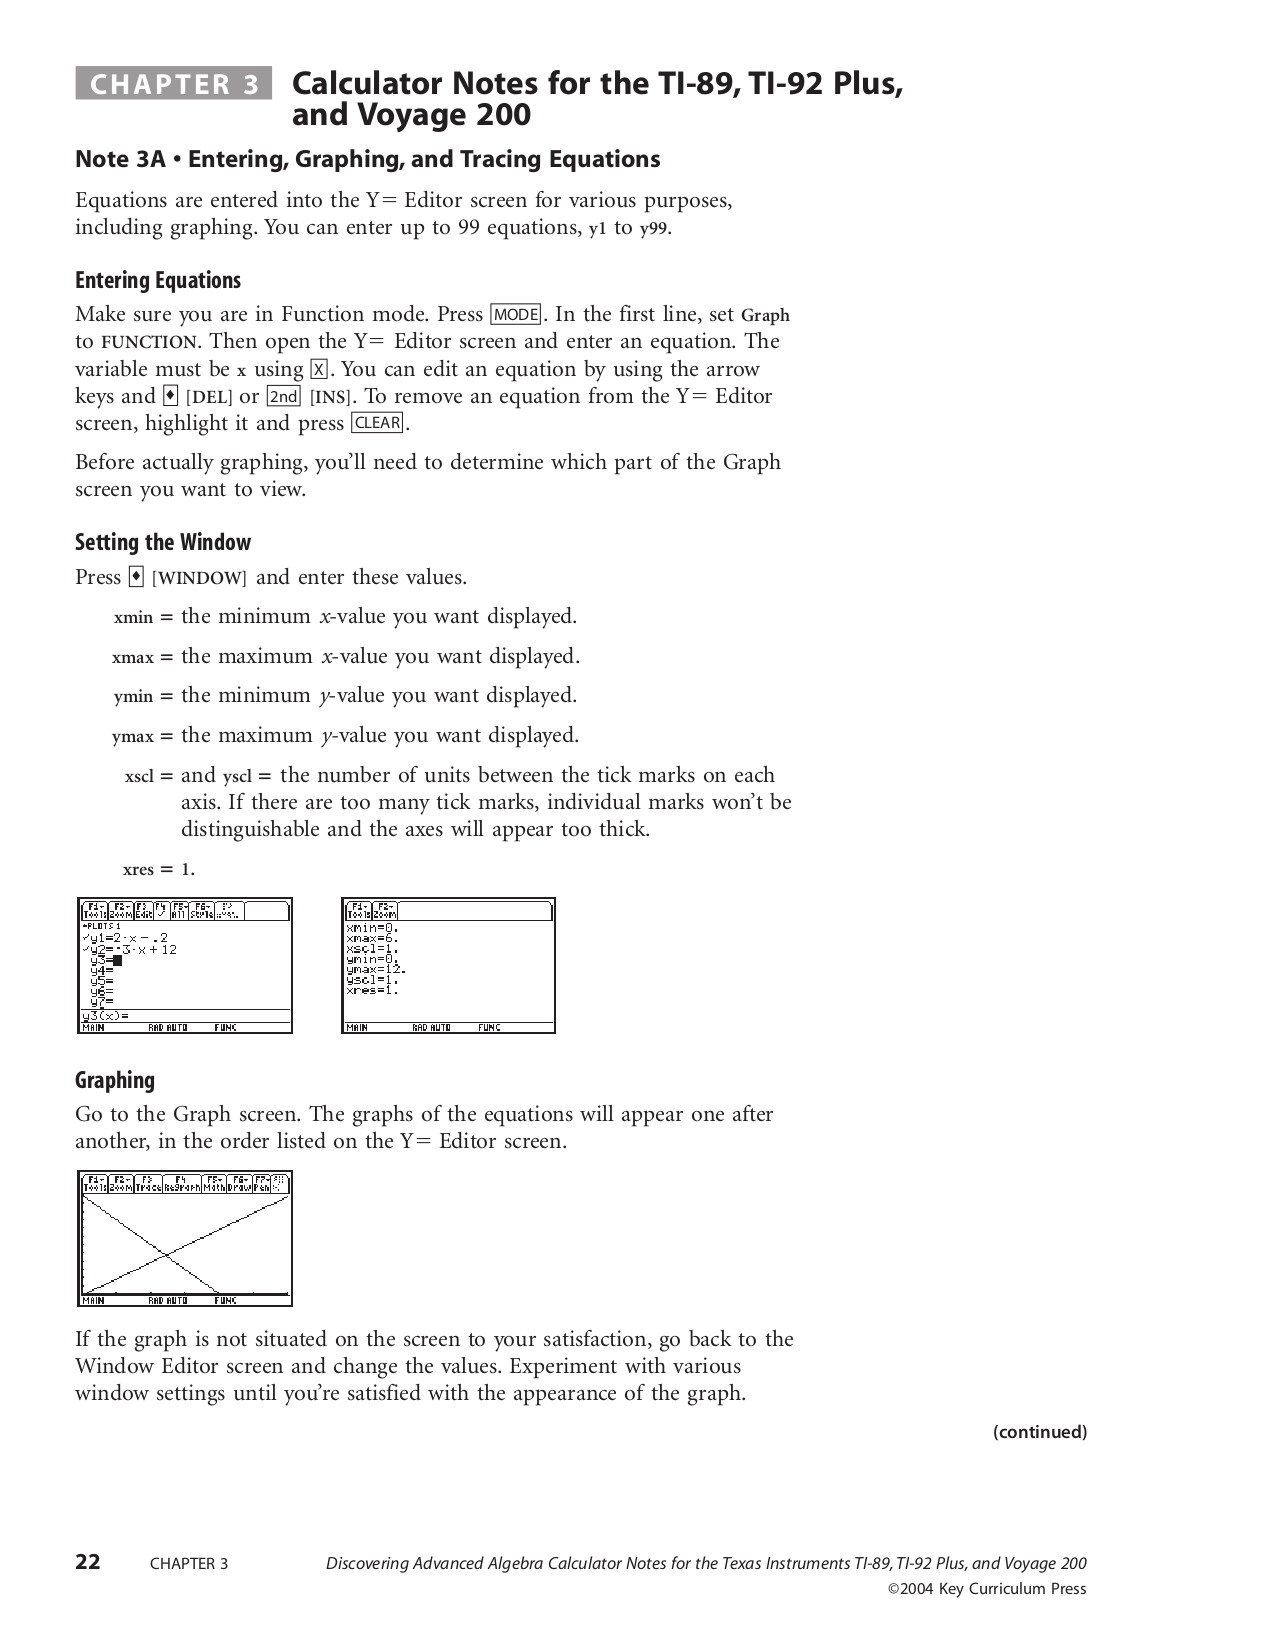 pdf for TI Calculator TI-92 Plus manual